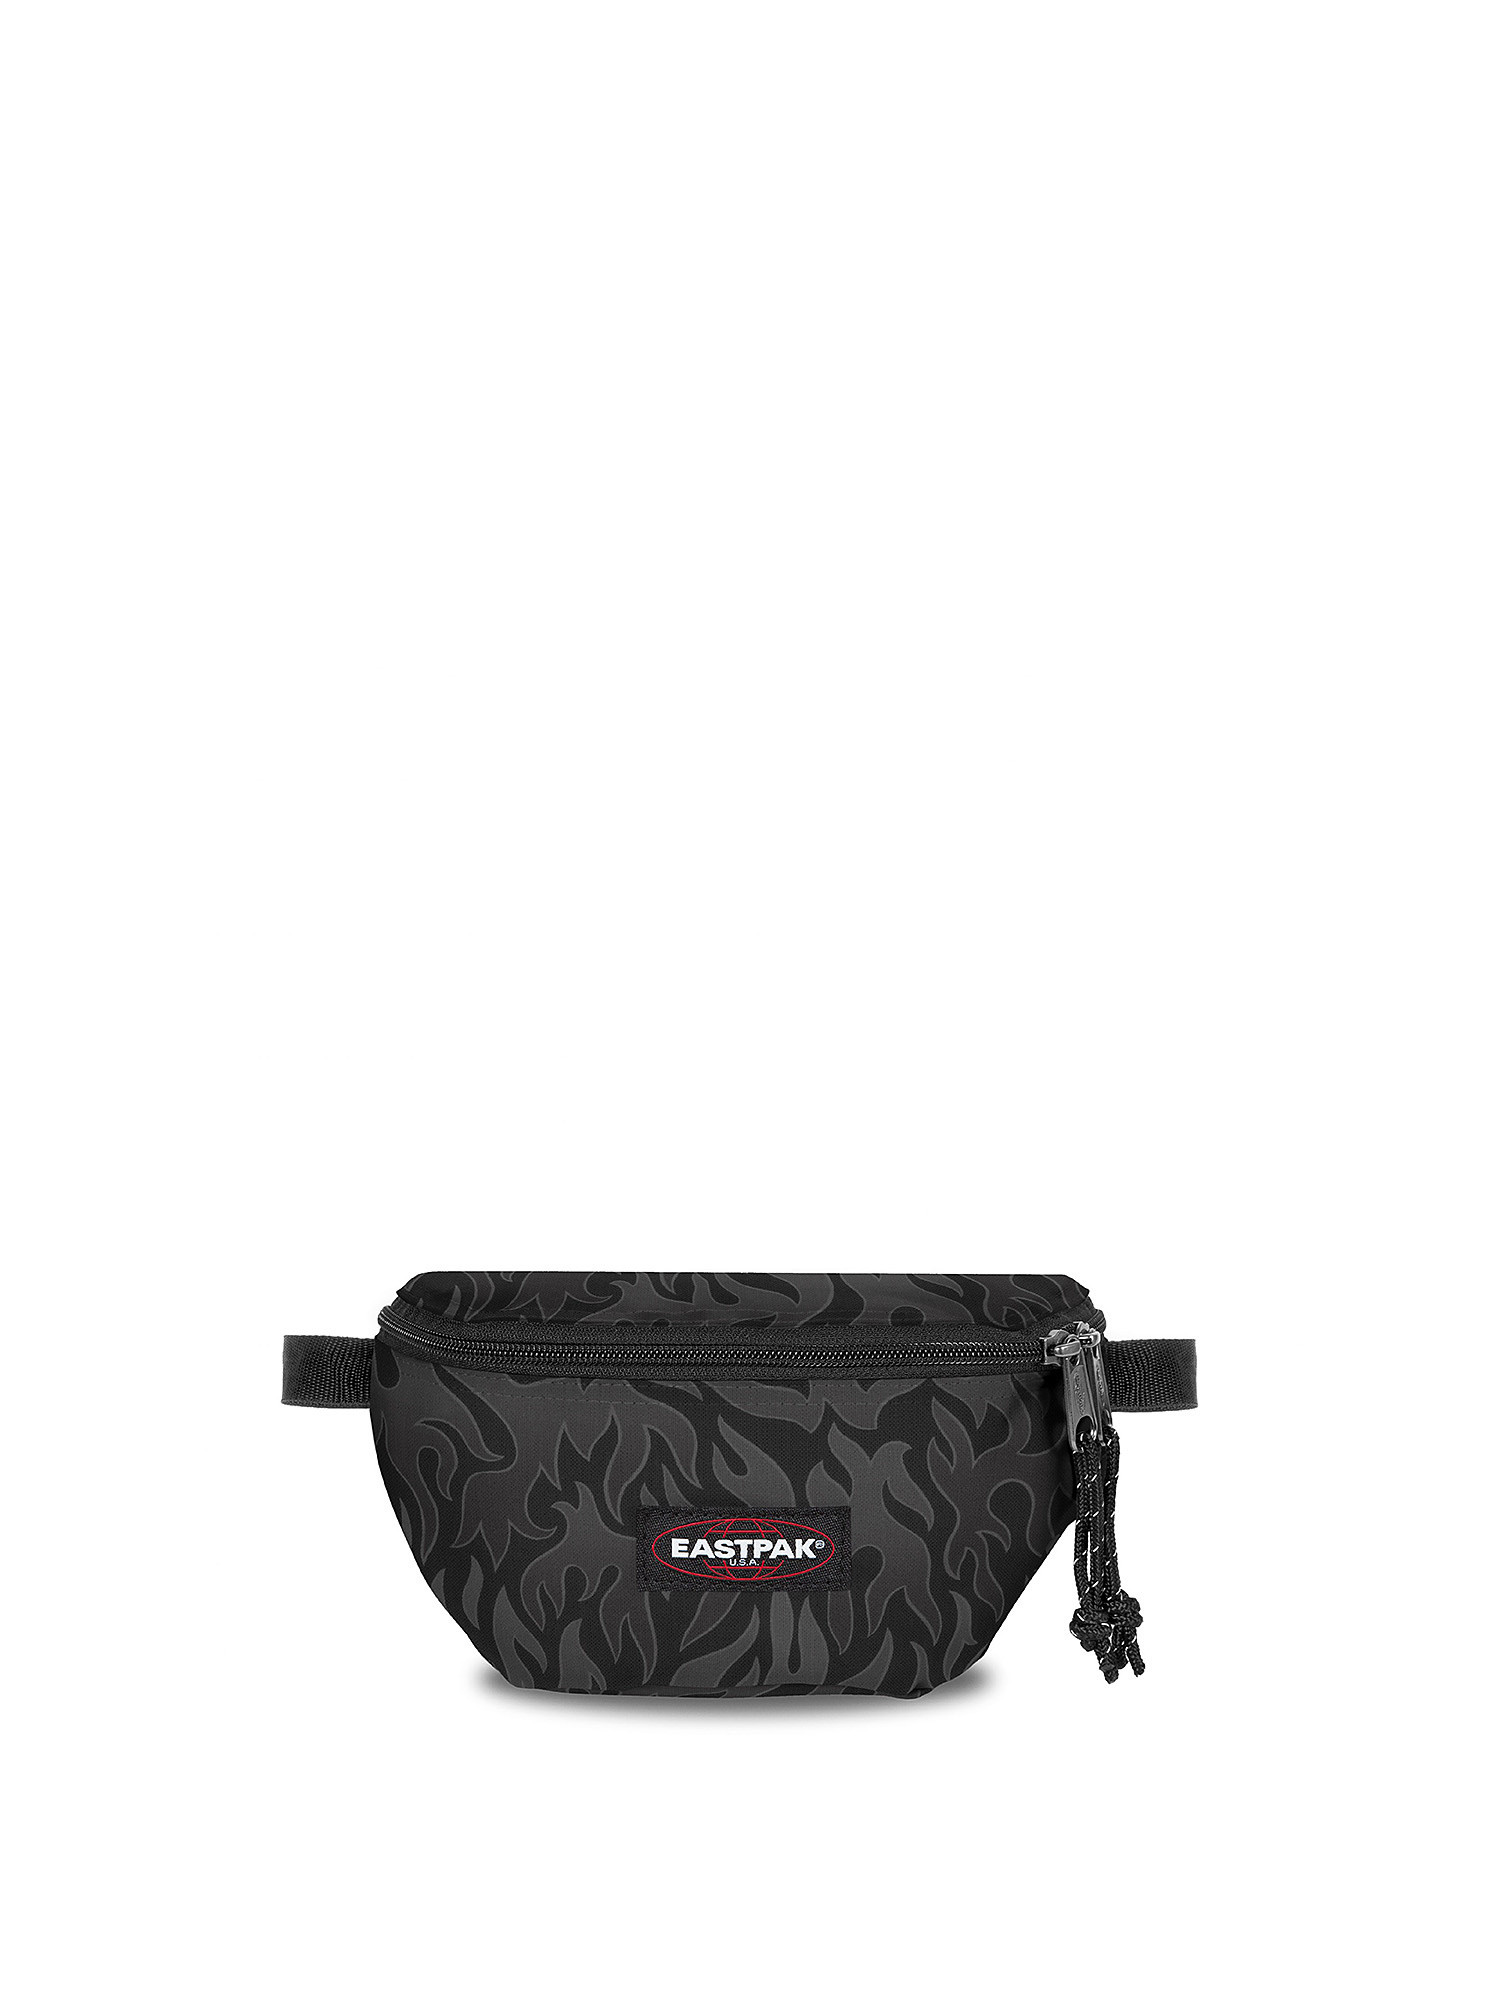 Eastpak - Springer Skate Flames Waist Bag, Black, large image number 0